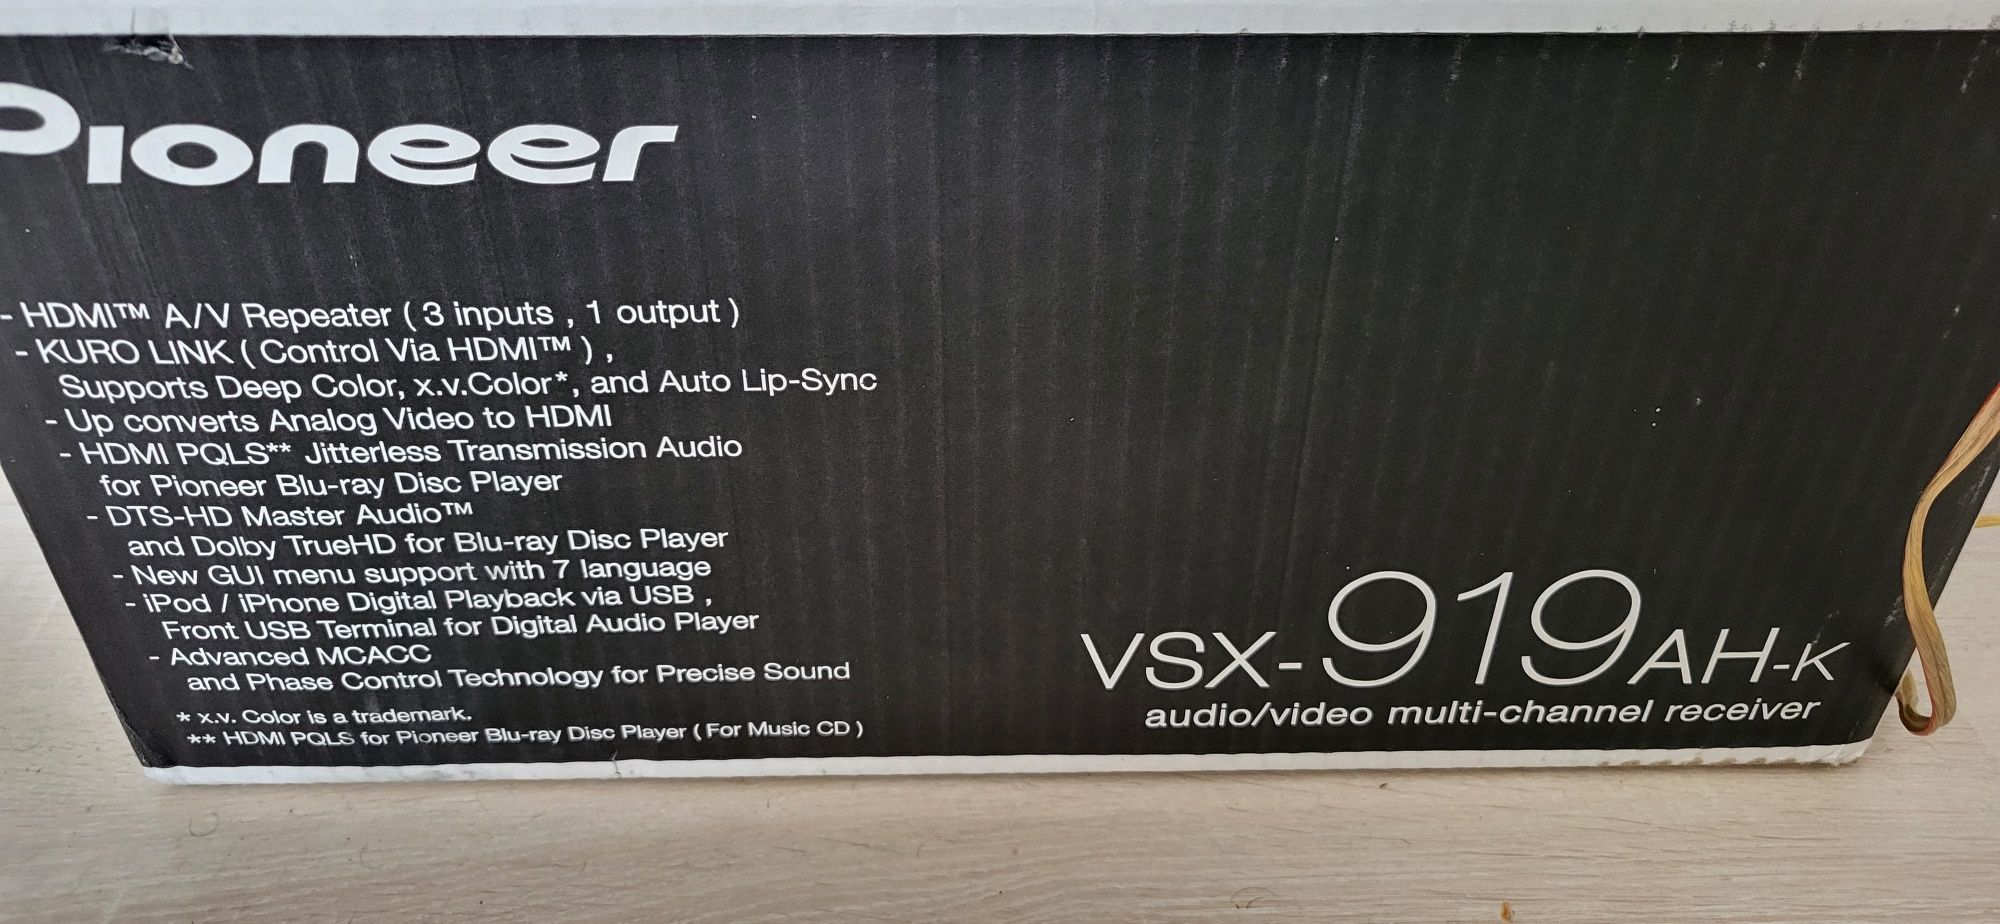 Amplituner Pioneer VSX-919AH-K 5.1 kino  domowe usb hdmi